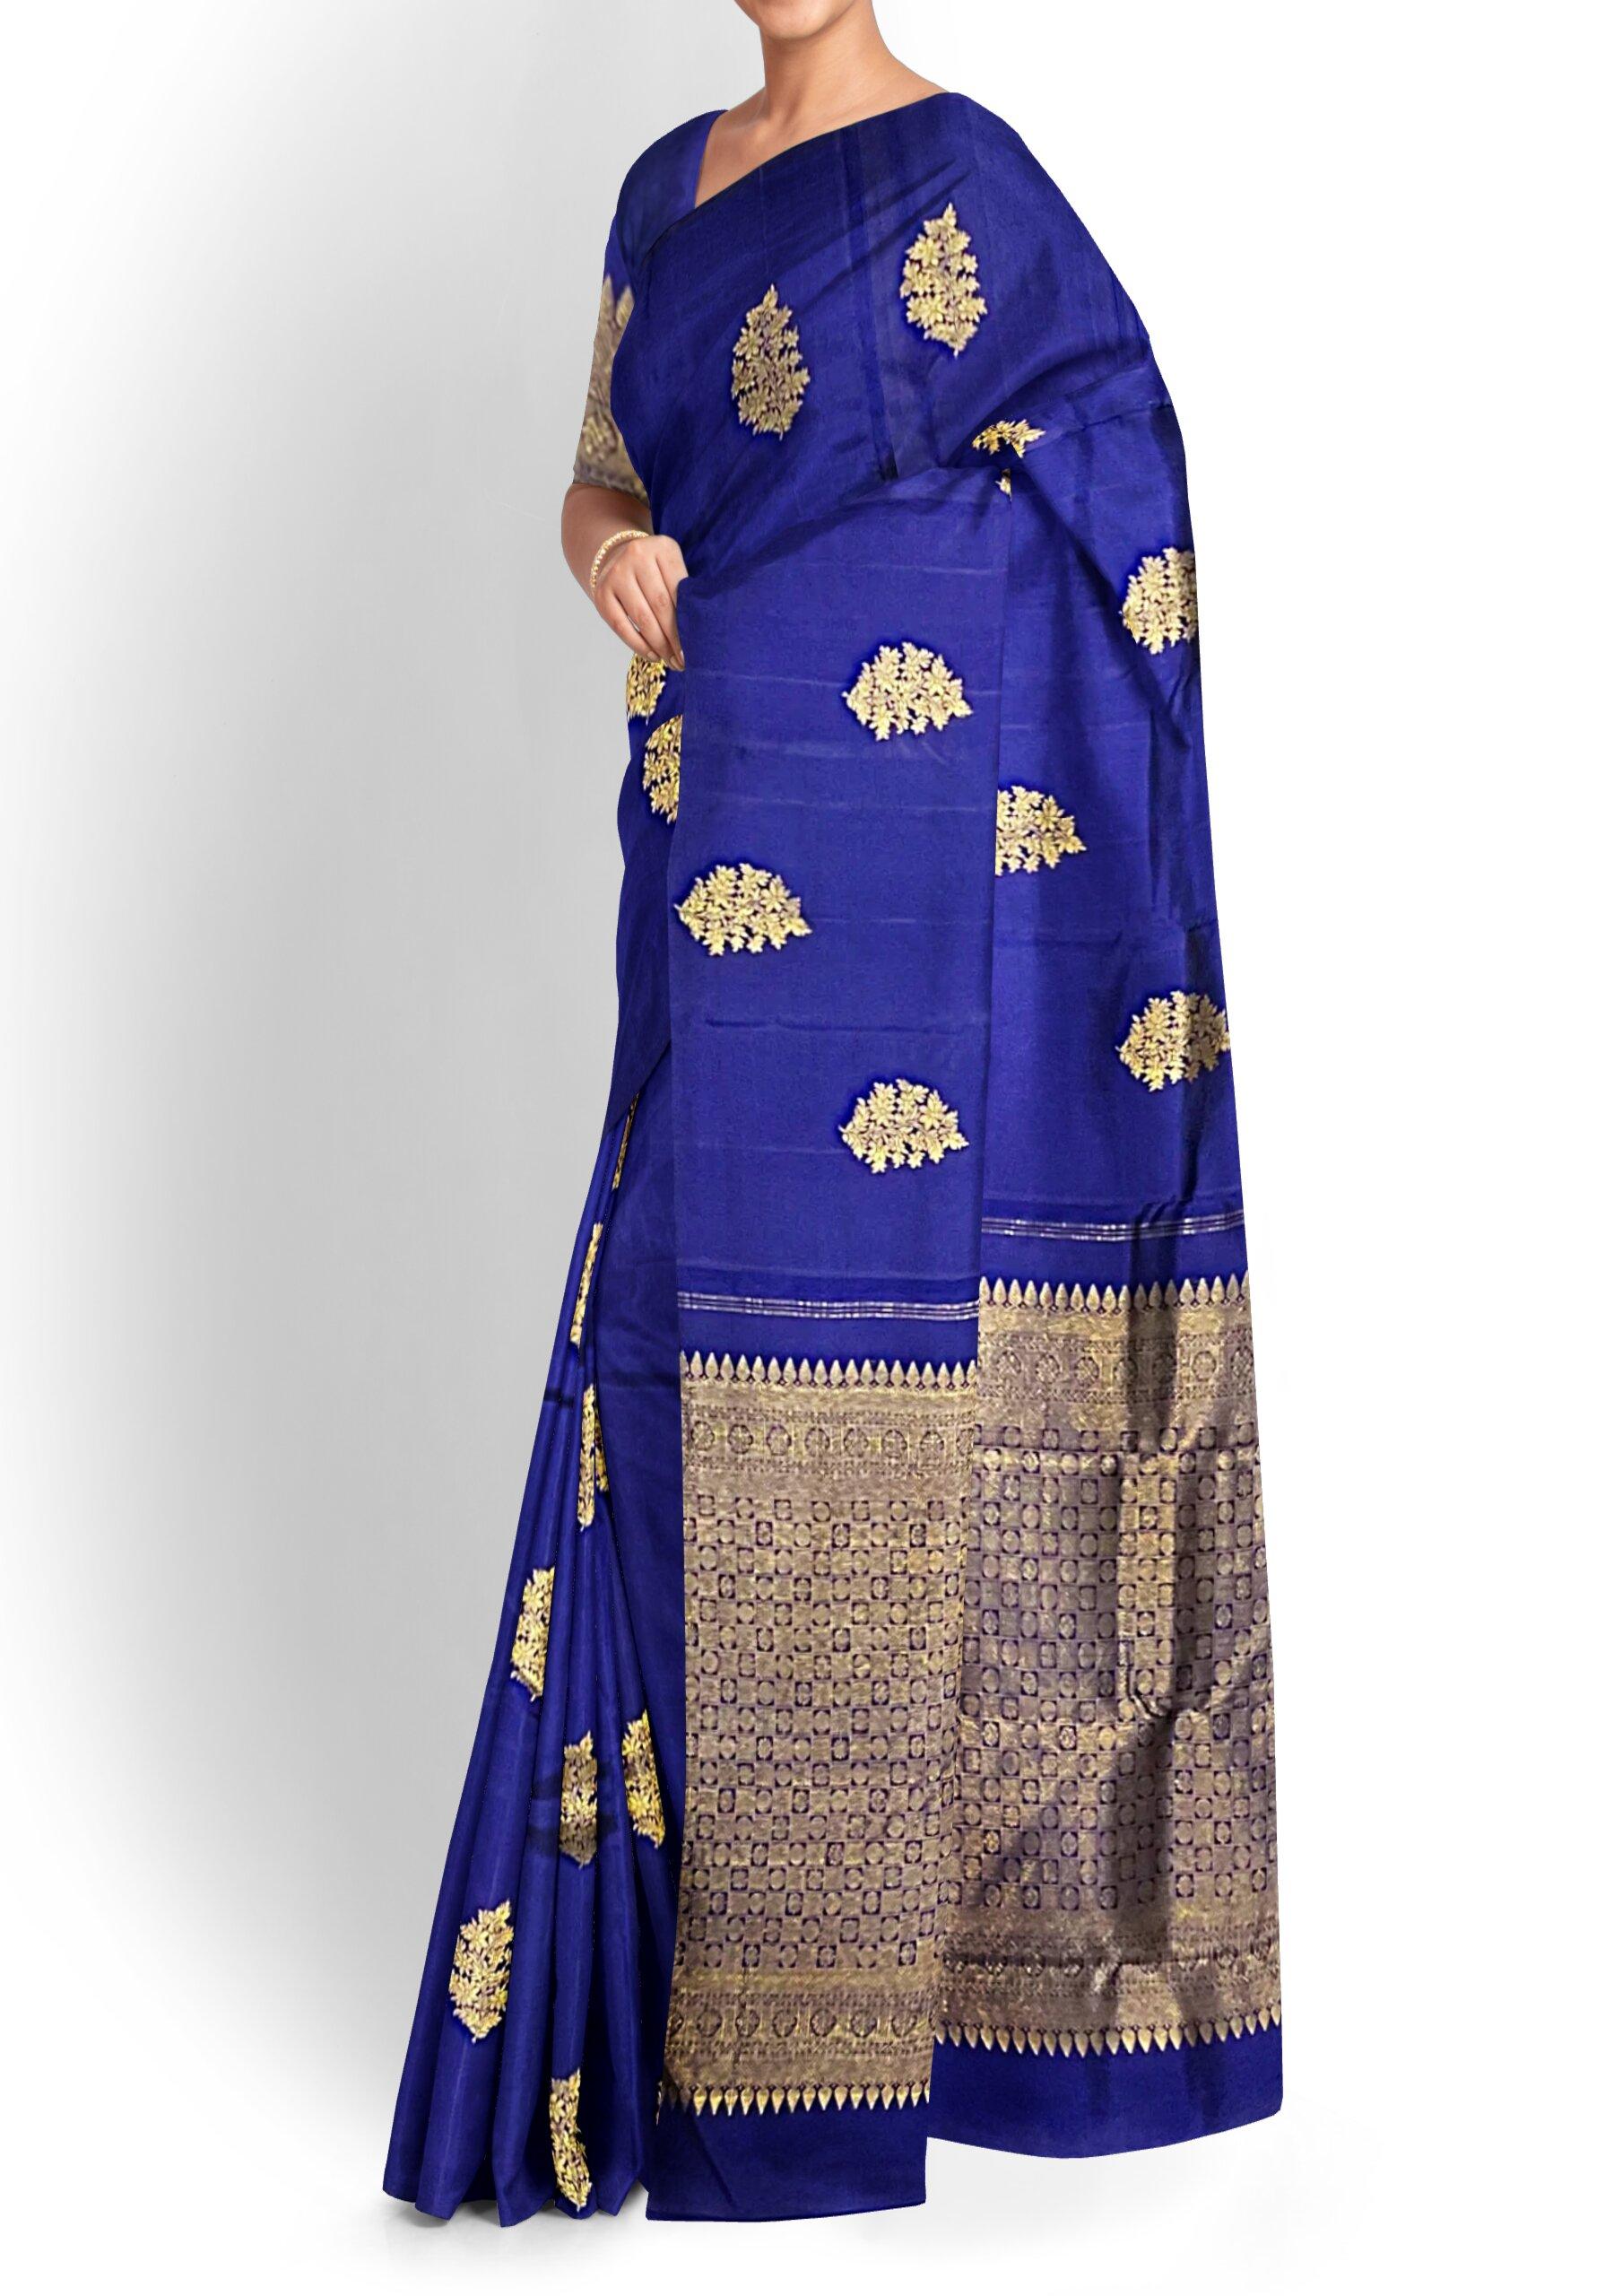 Onam Saree Blouse Designs - Kerala Saree Collection